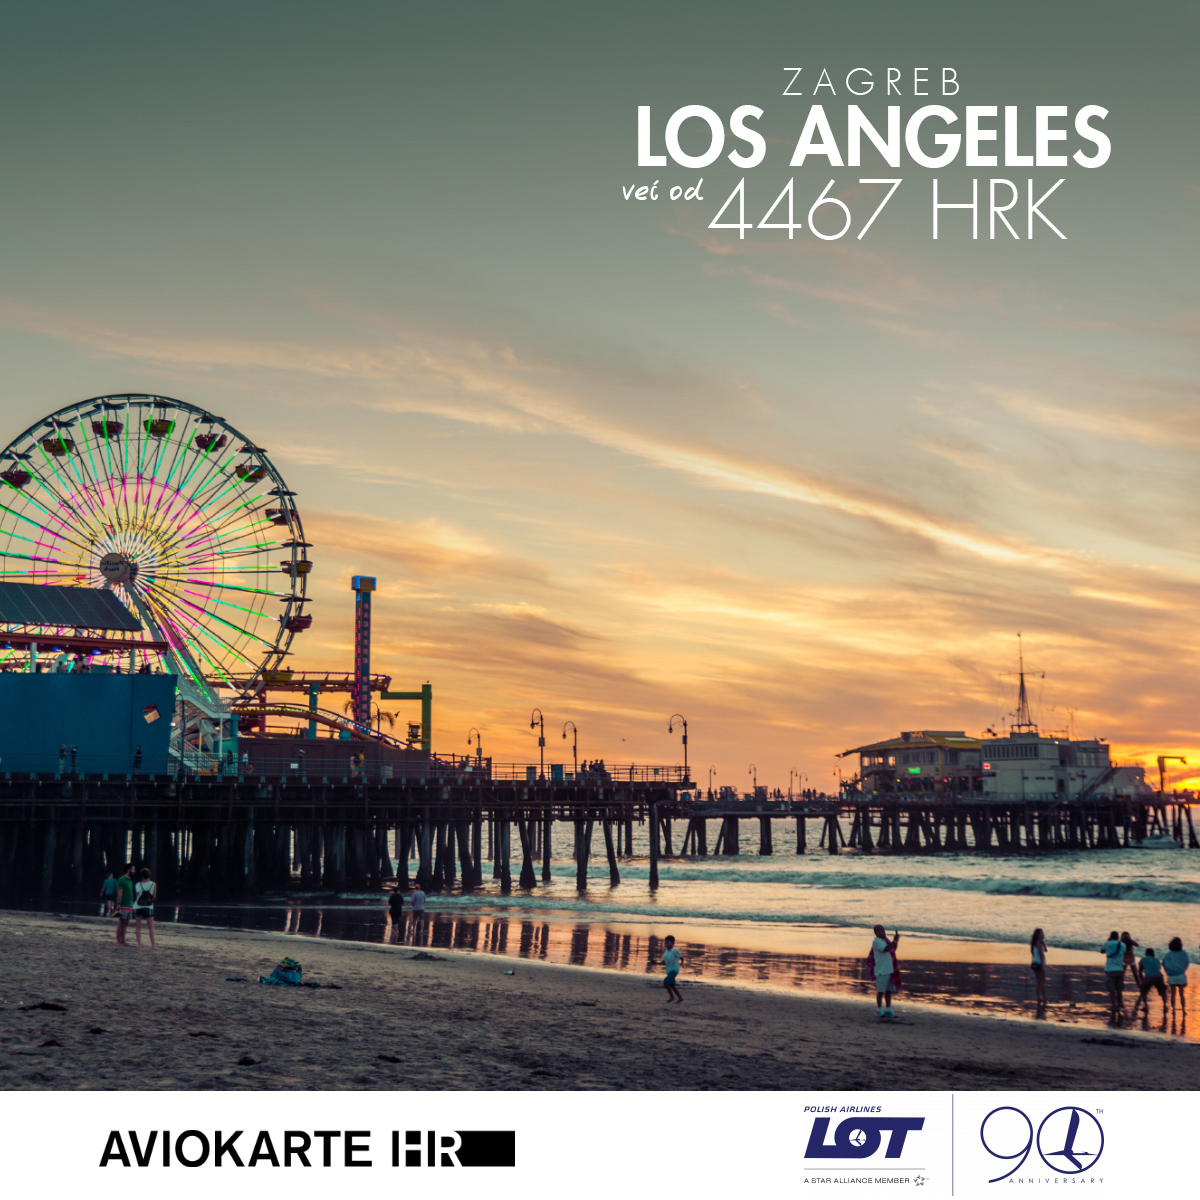 Los Angeles vizual, Los Angeles već od 1400 kuna, Los Angeles jeftine avio karte, putovanje za Los Angeles 